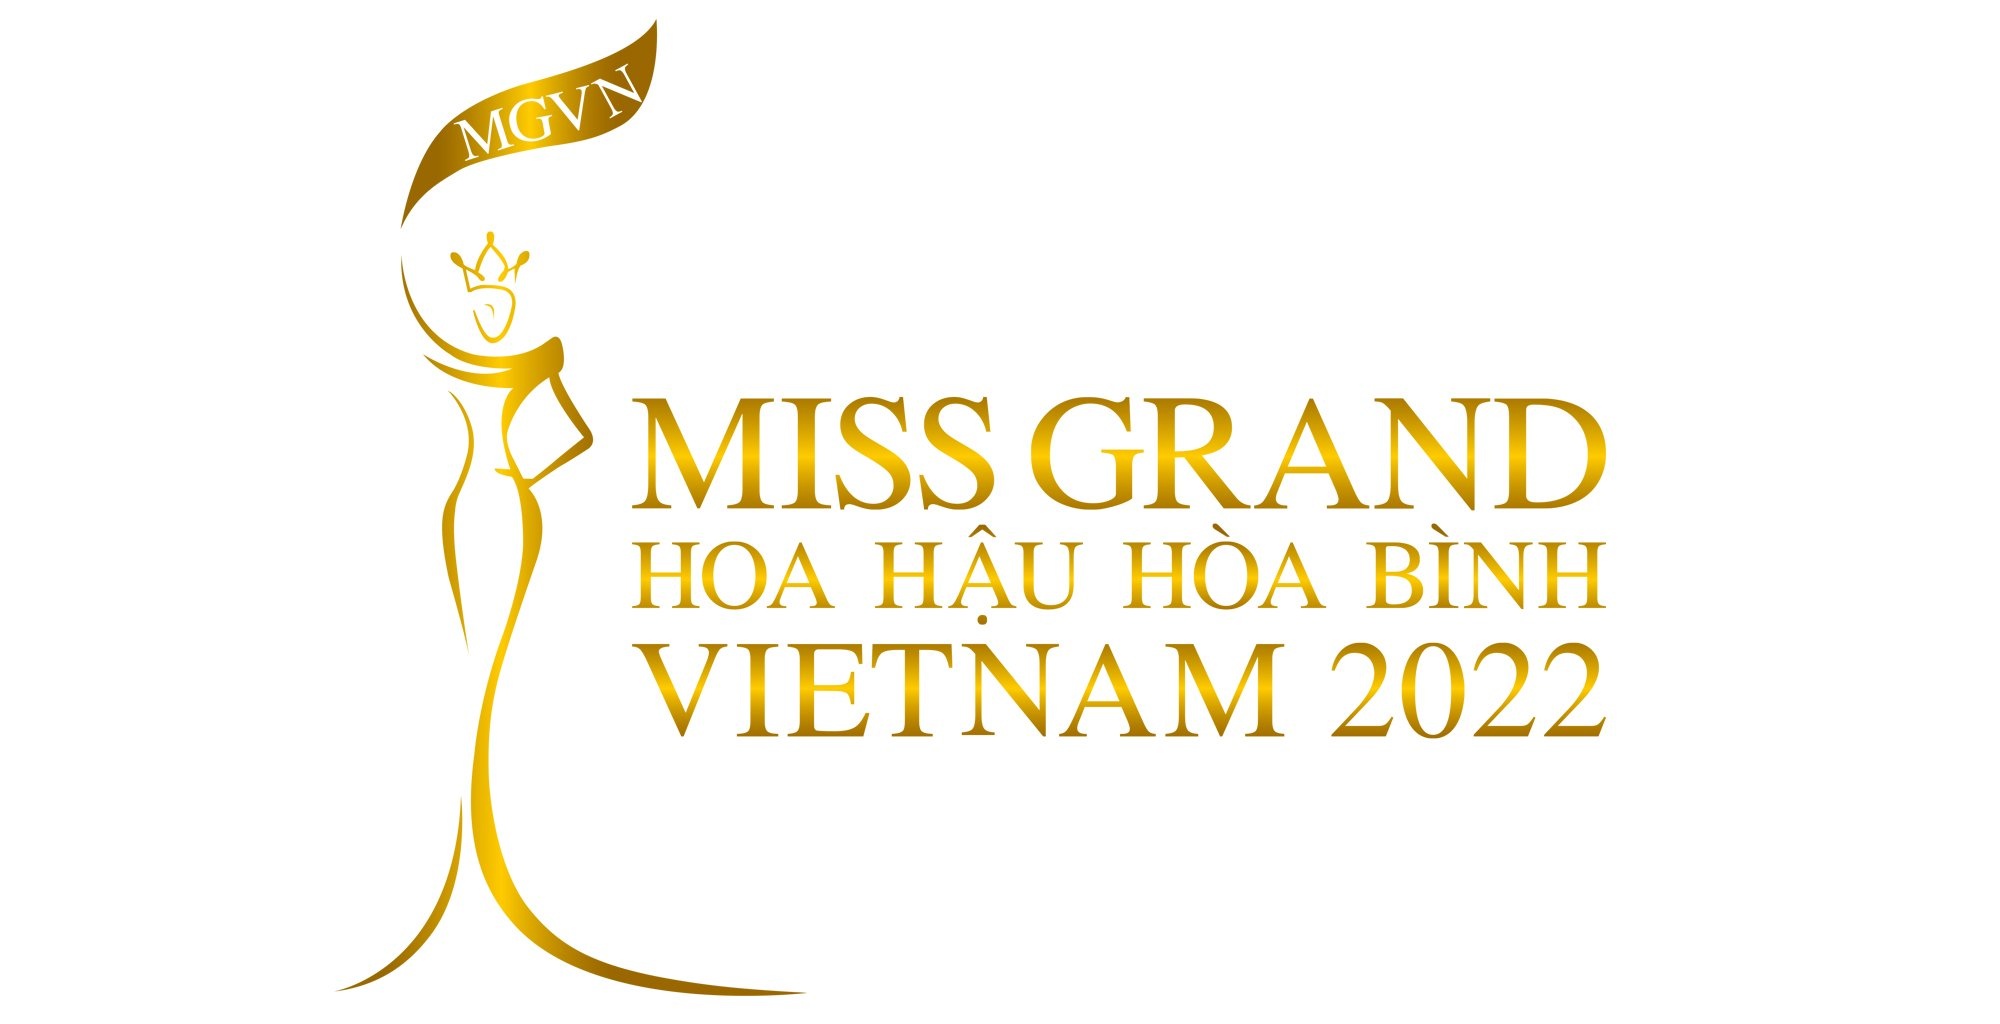 Quỳnh Châu đăng quang Hoa hậu Hòa bình Việt Nam 2022?-17